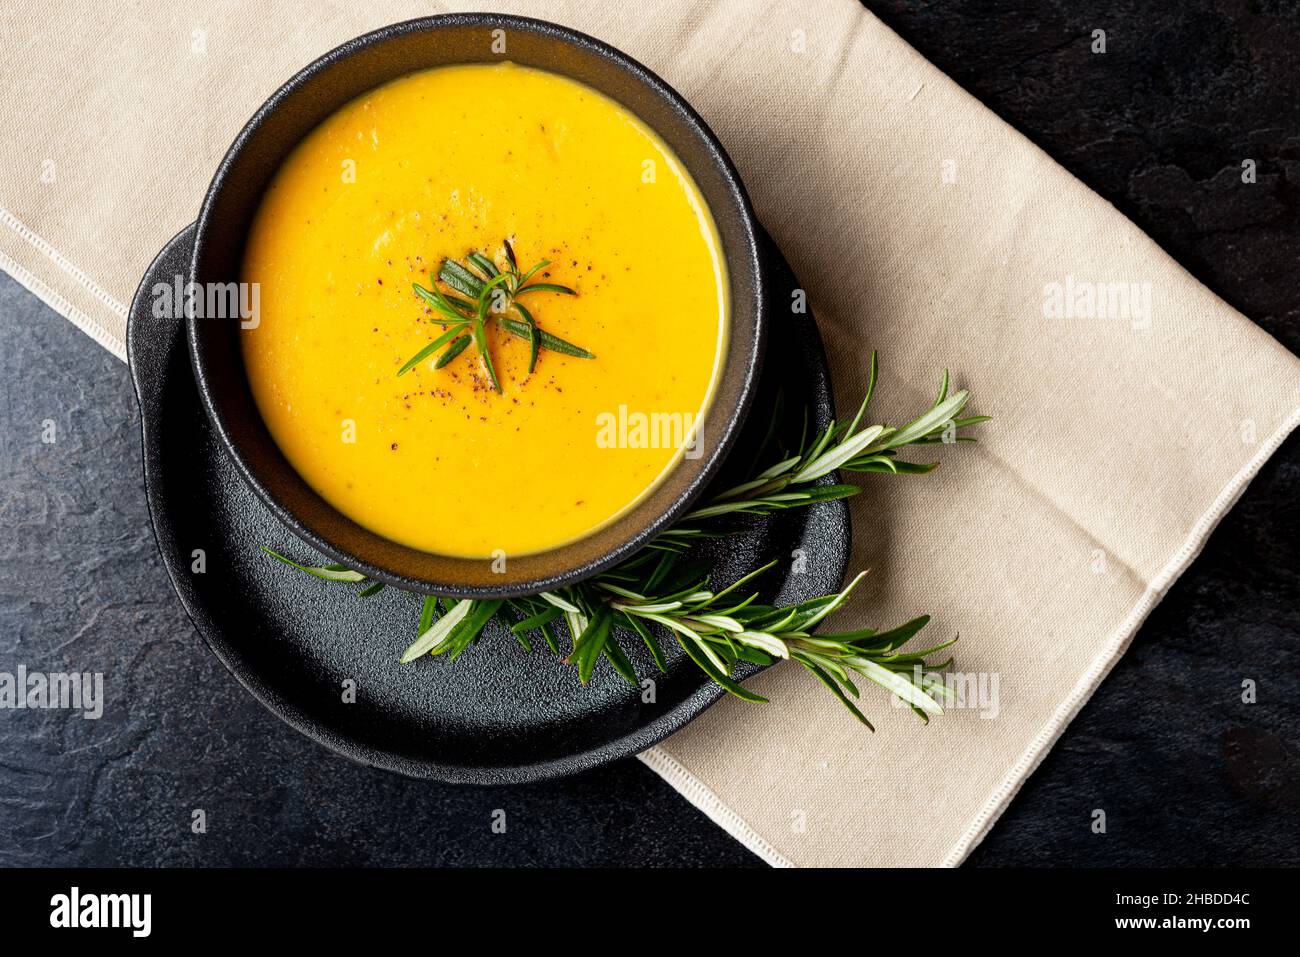 Kürbissuppe auf Leinenserviette auf dunklem Hintergrund. Konzept des Essens von saisonalen Lebensmitteln, klimatarische Ernährung. Stockfoto